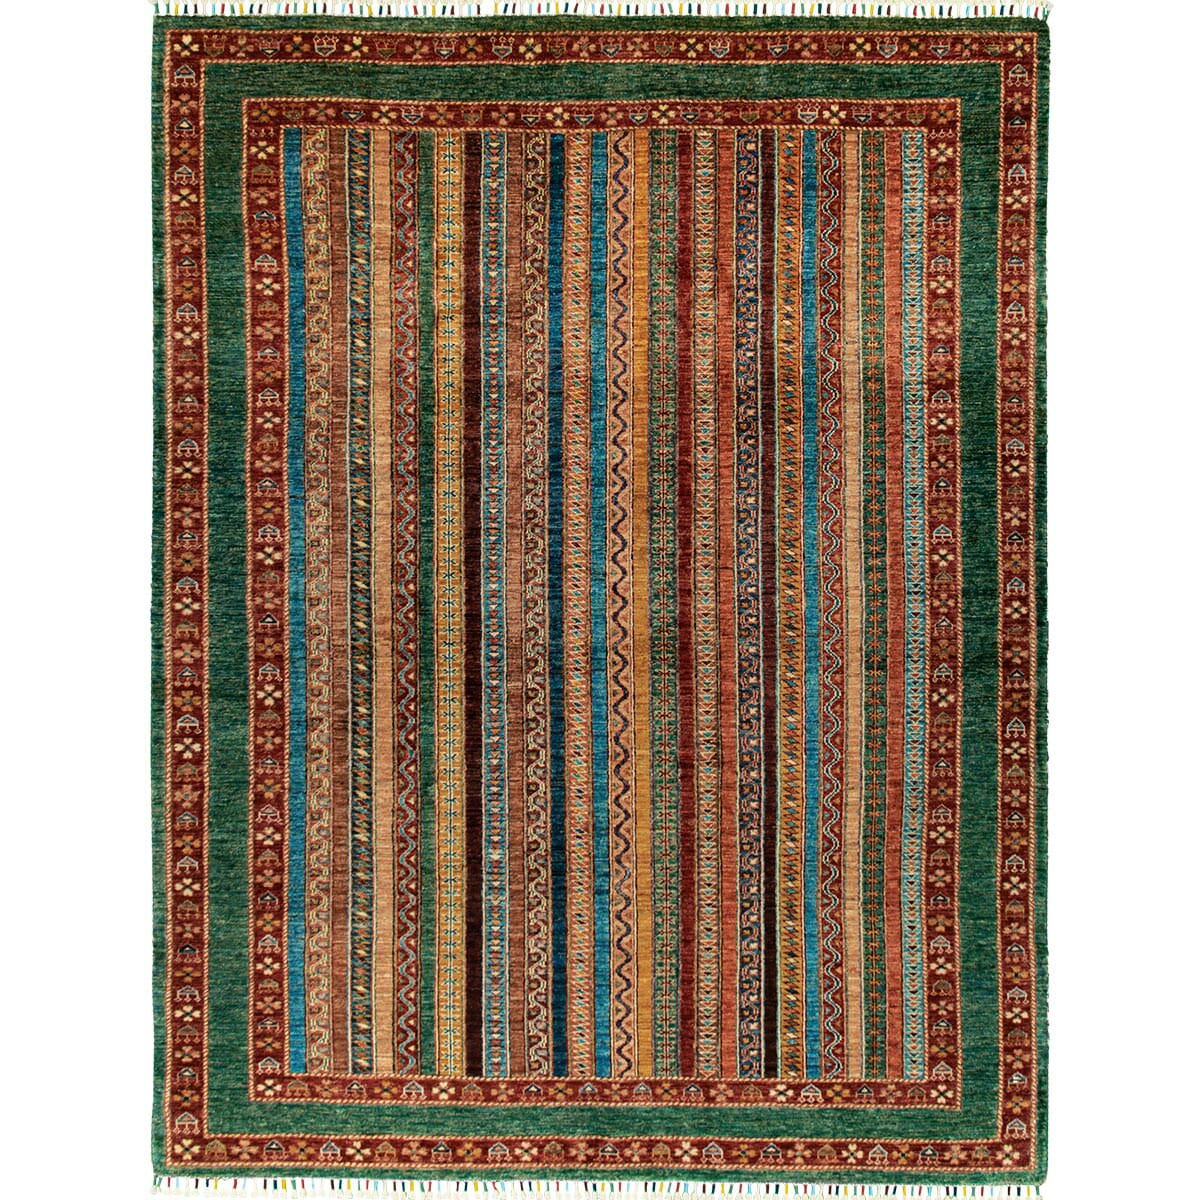 שאל פרסי 00 צבעוני 182x245 | השטיח האדום